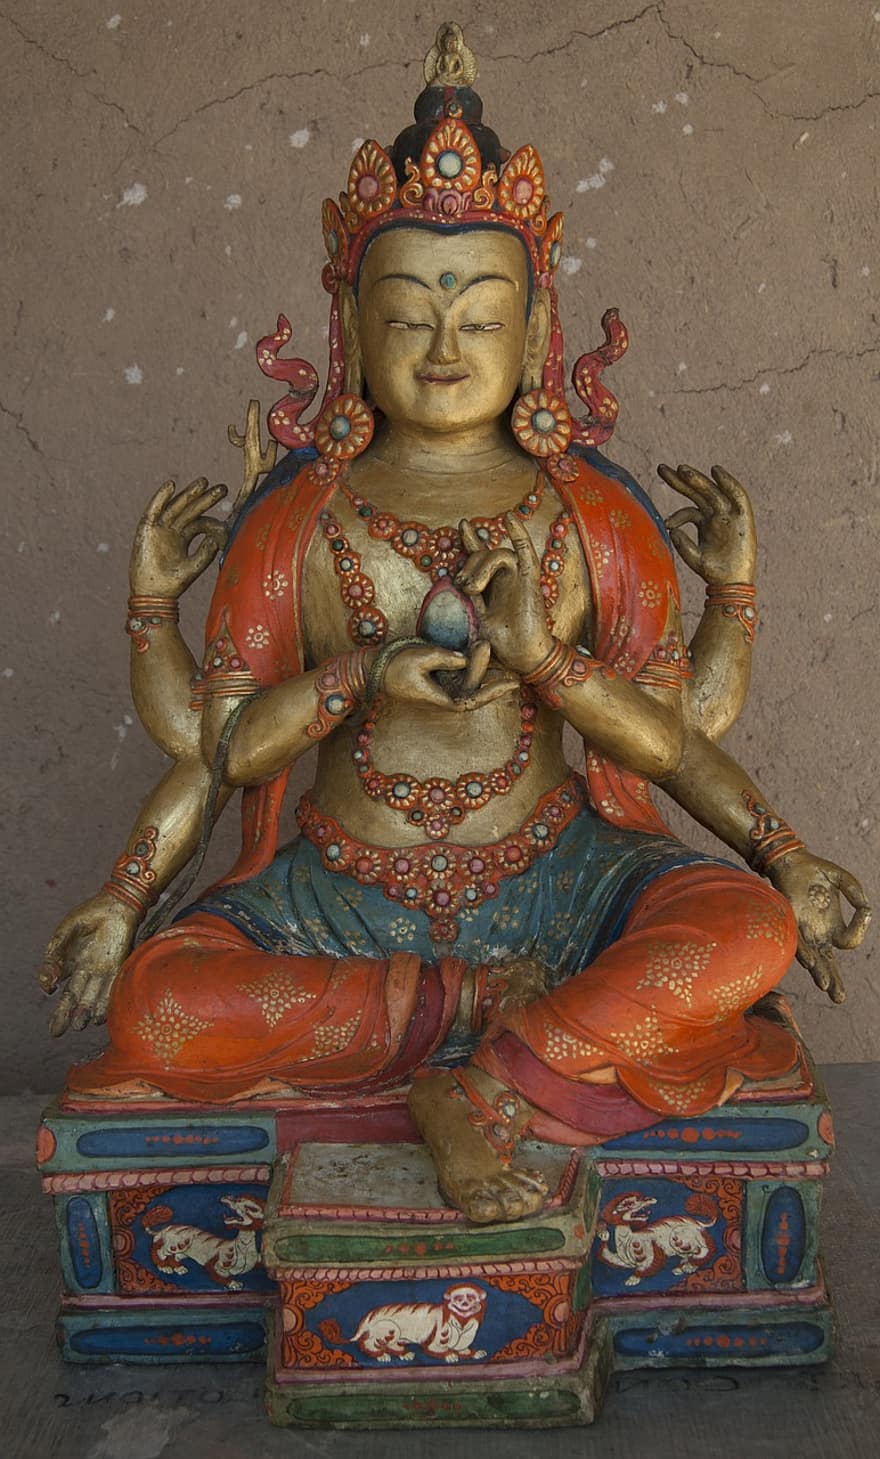 Буддійський живопис, Буддизм, буддистське мистецтво, скульптура, релігія, культур, статуя, духовність, індуїзм, боже, відоме місце